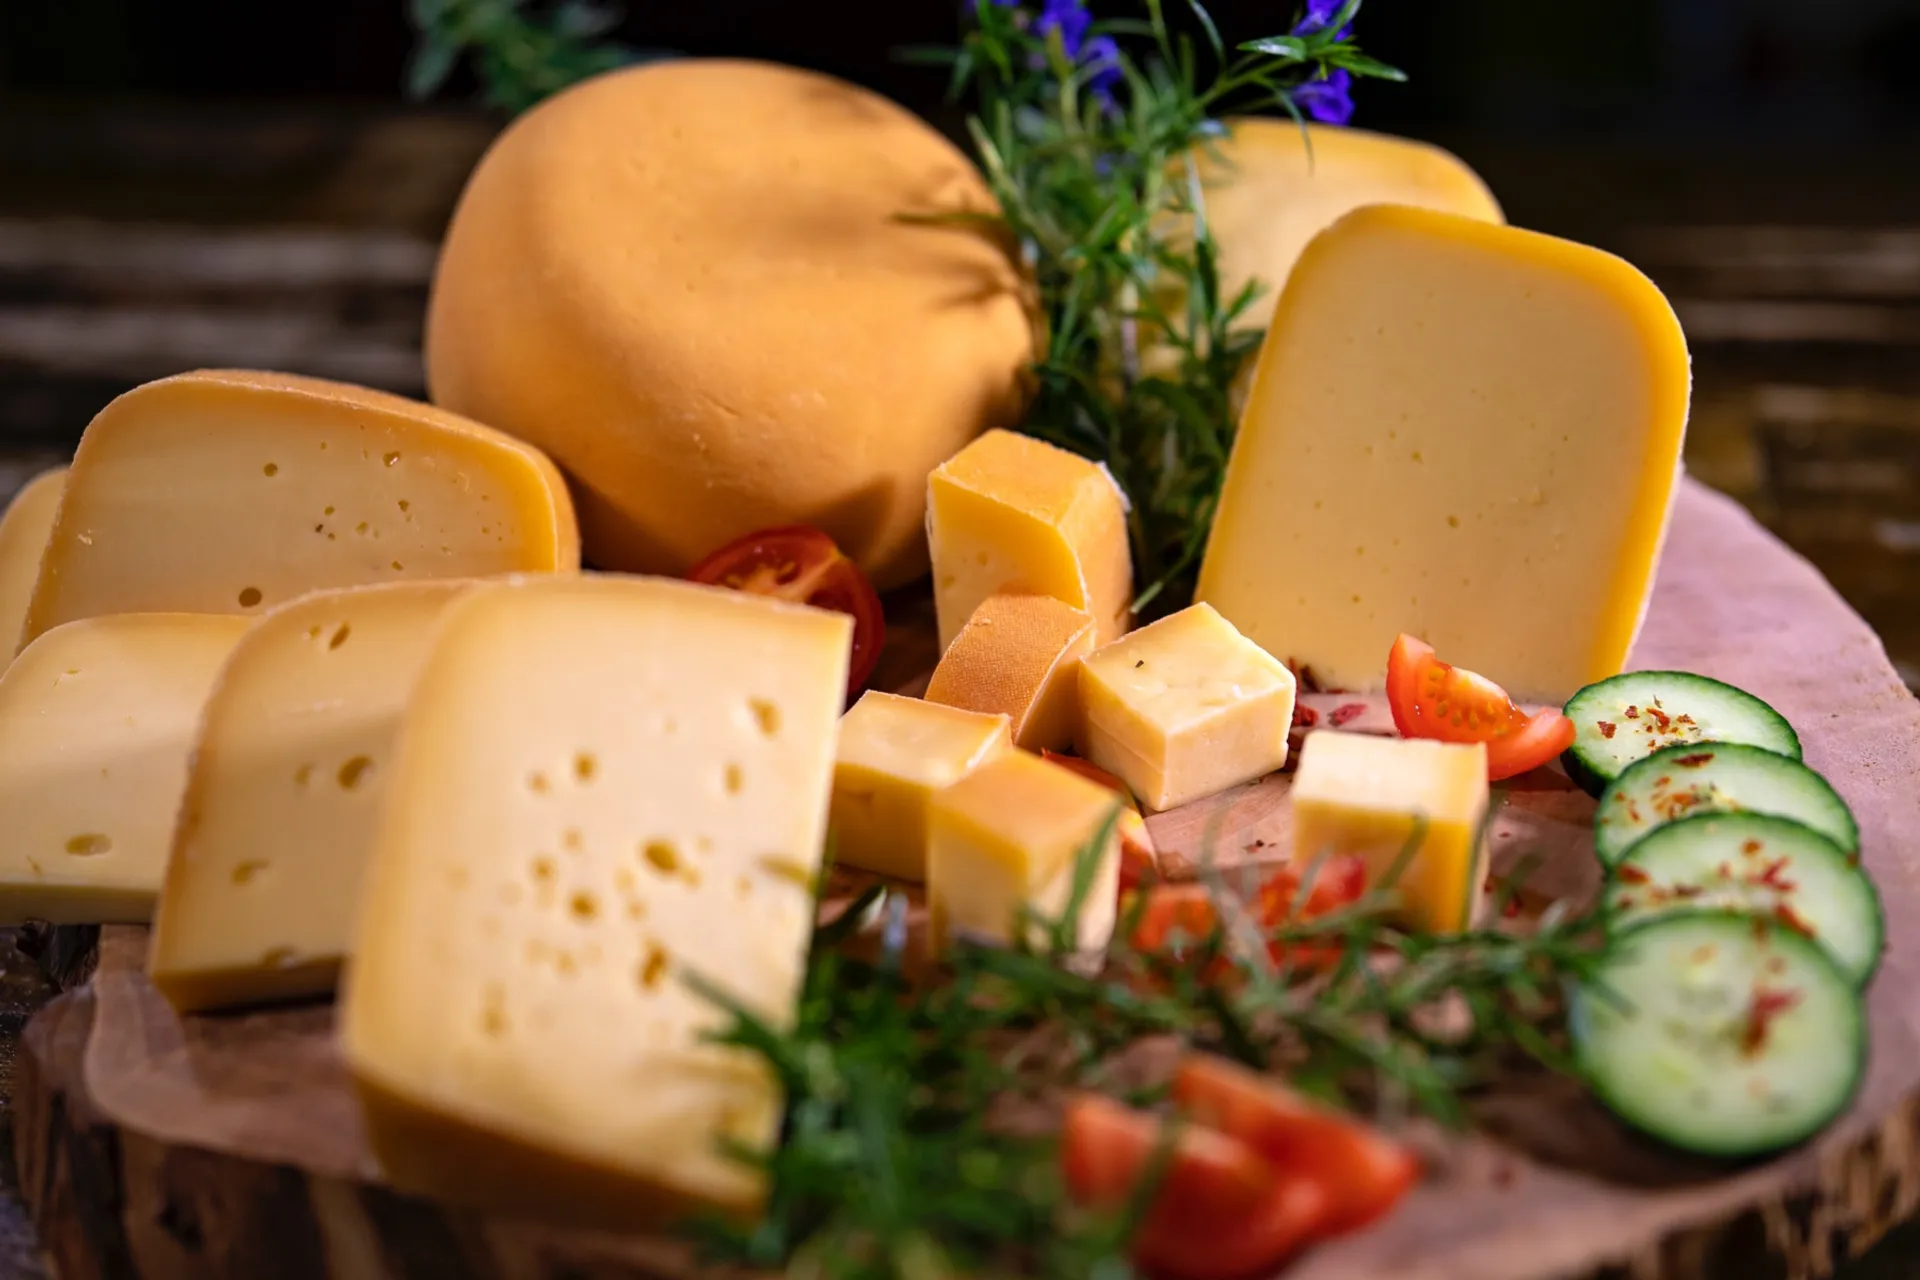 zu Lebensmittel Lebensmittel liefern Bio-Käse Bioland lassen Frische Engelnhof, dir Hause direkt Abendrot / von nach |CrowdFarming: Deutschland Papenburger Saisonale